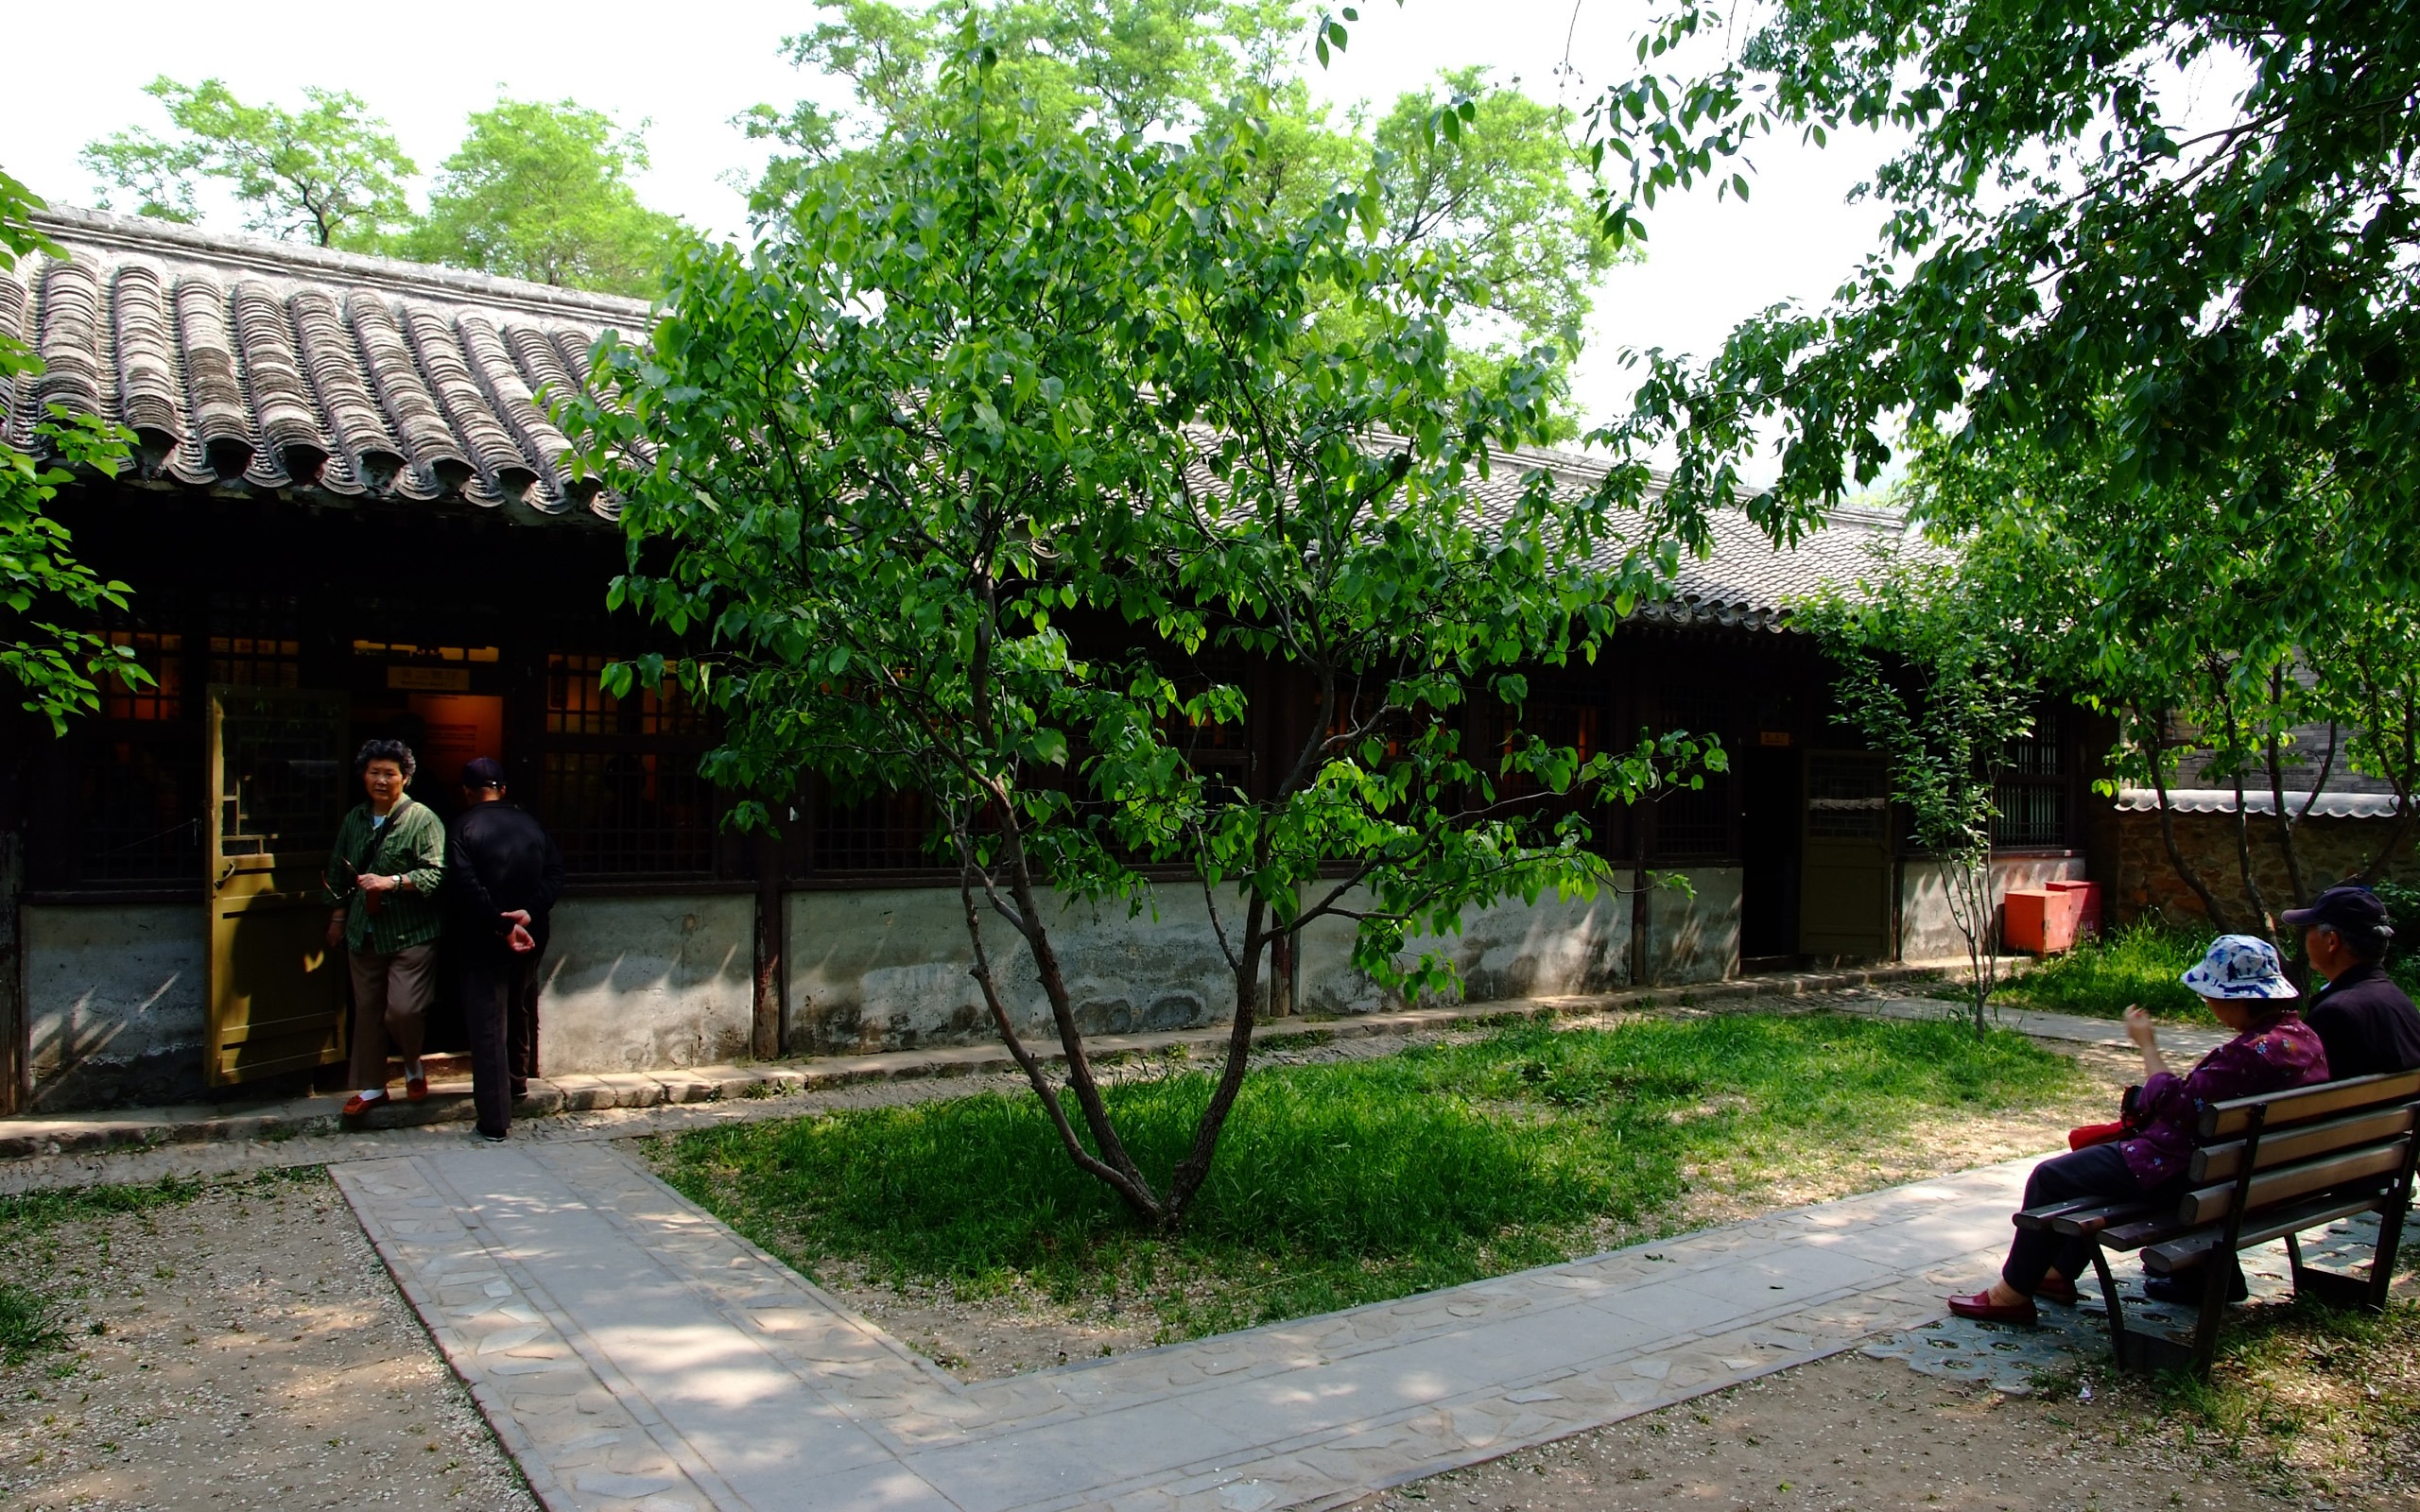 初夏的香山植物园 (螺纹钢作品)18 - 2560x1600